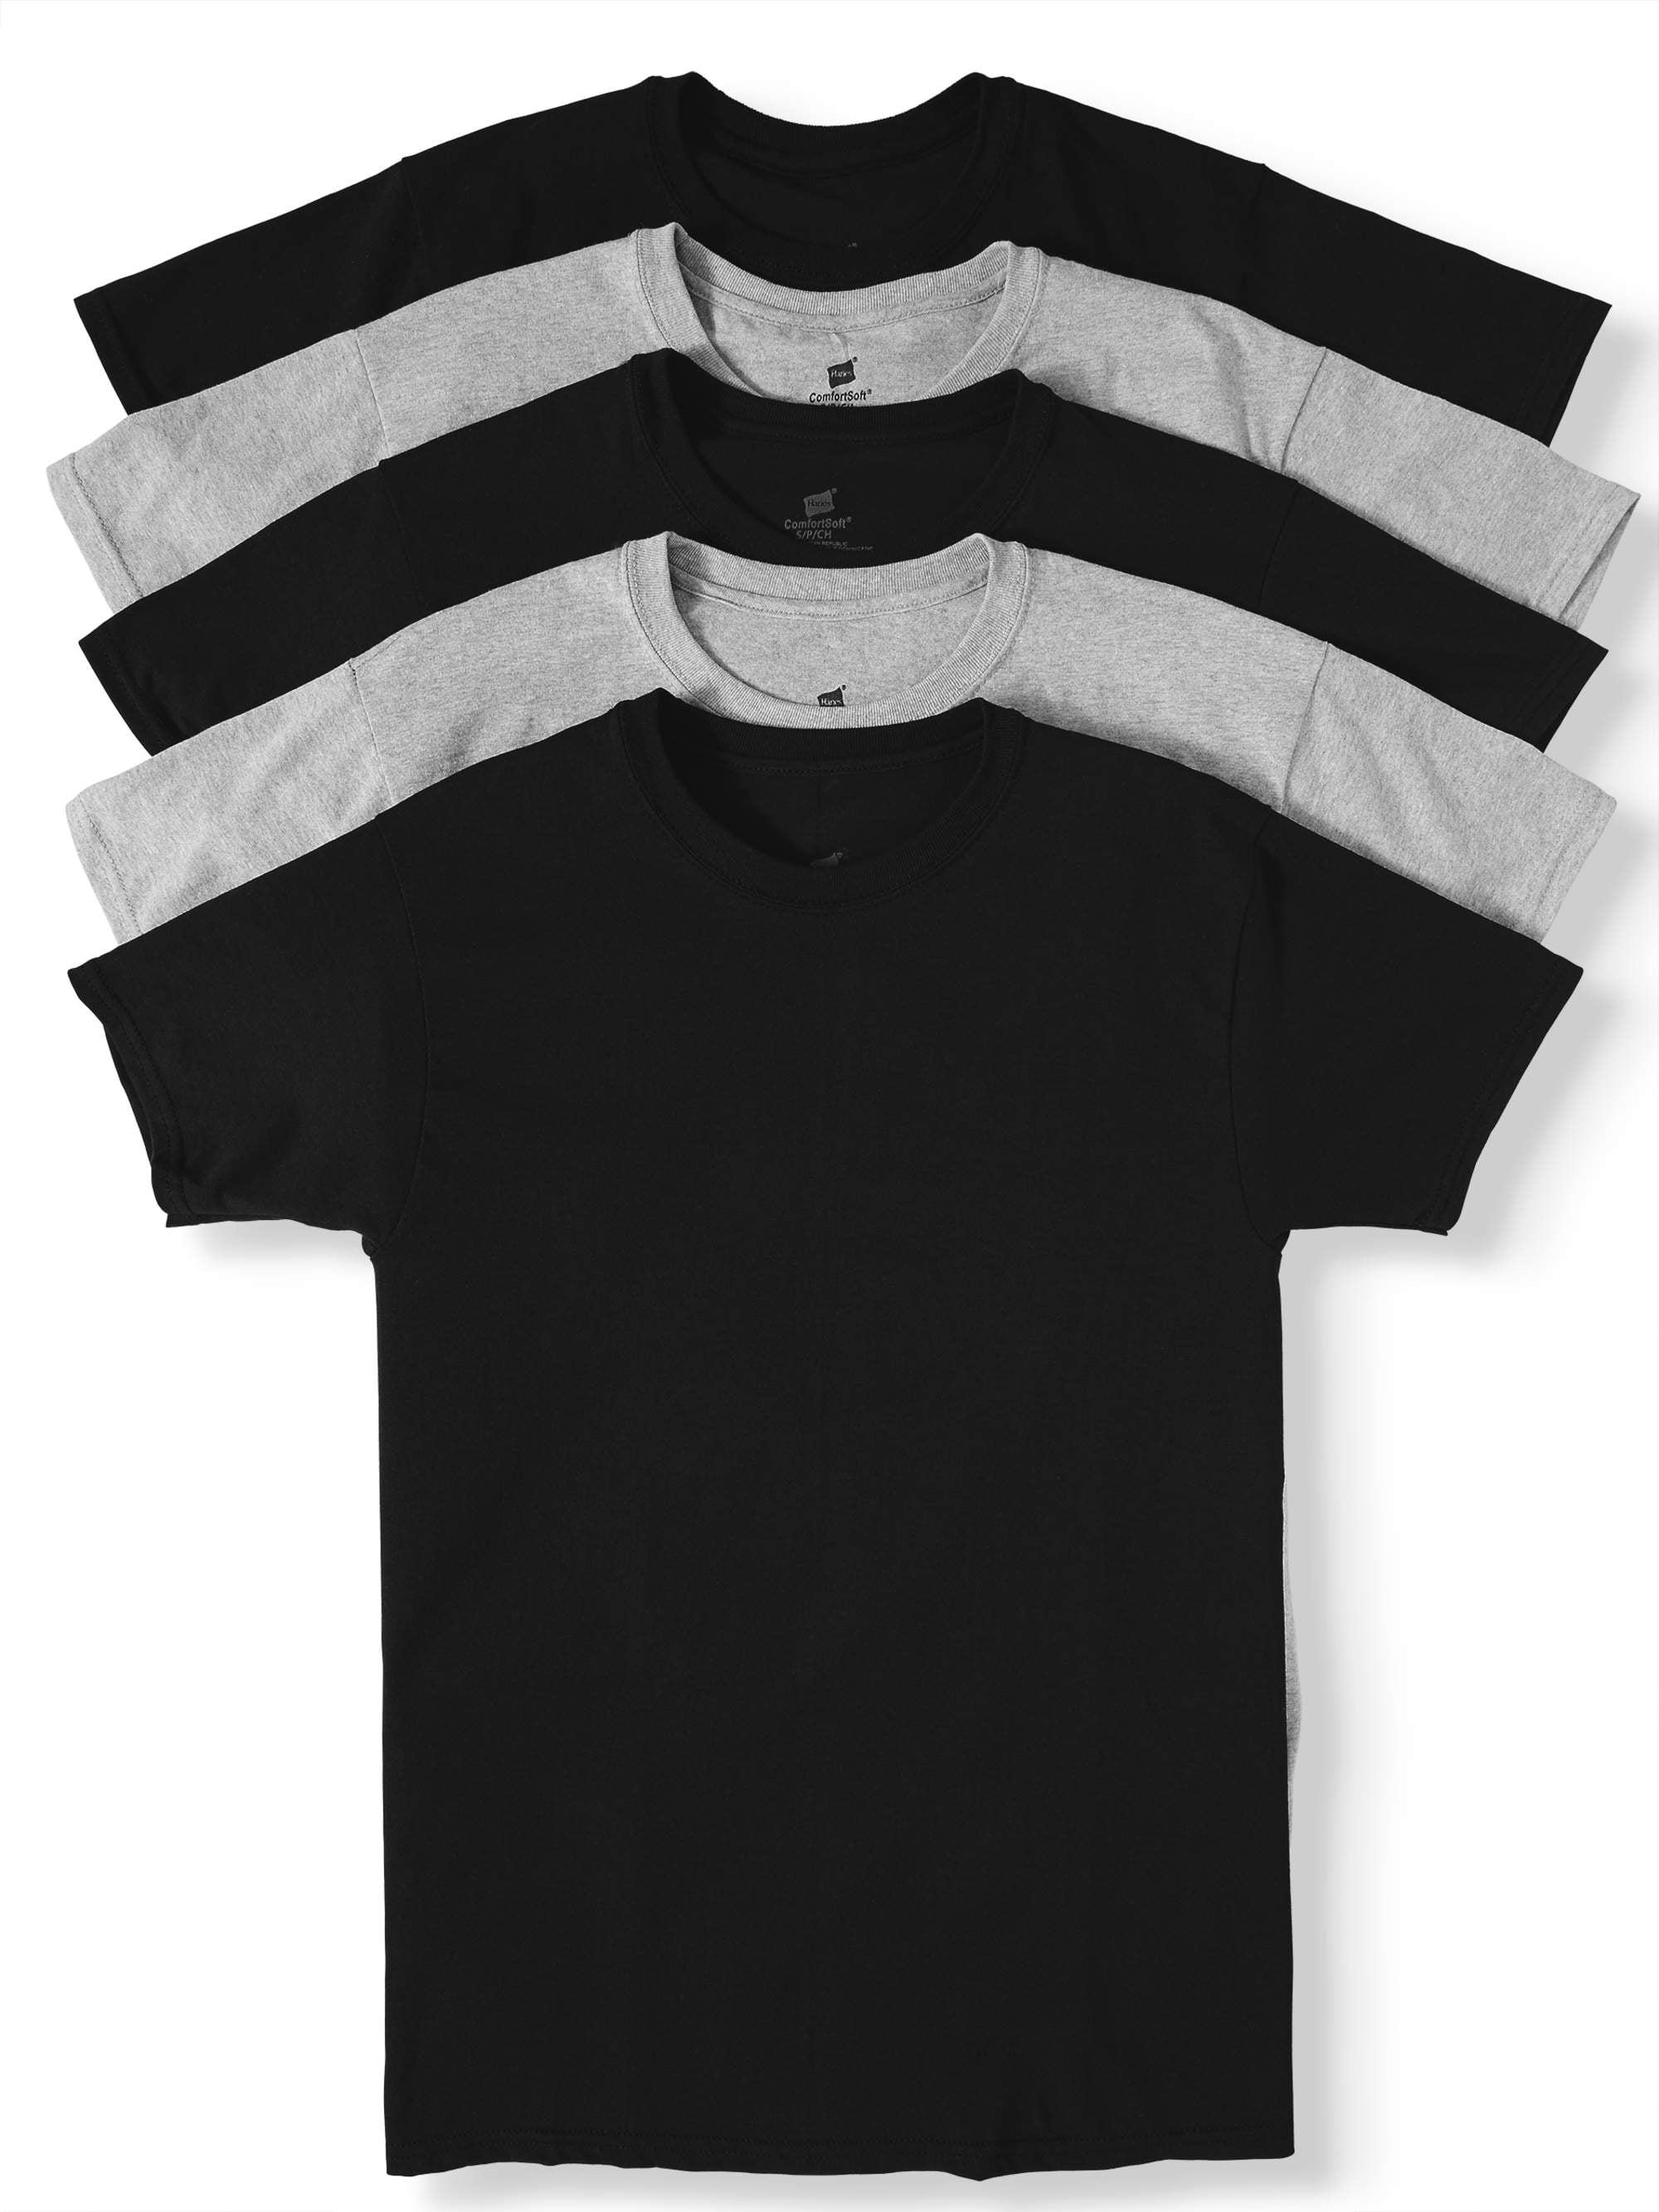 Hanes Men's ComfortSoft Tagless Crewneck T-Shirt 6-Pack Assorted L